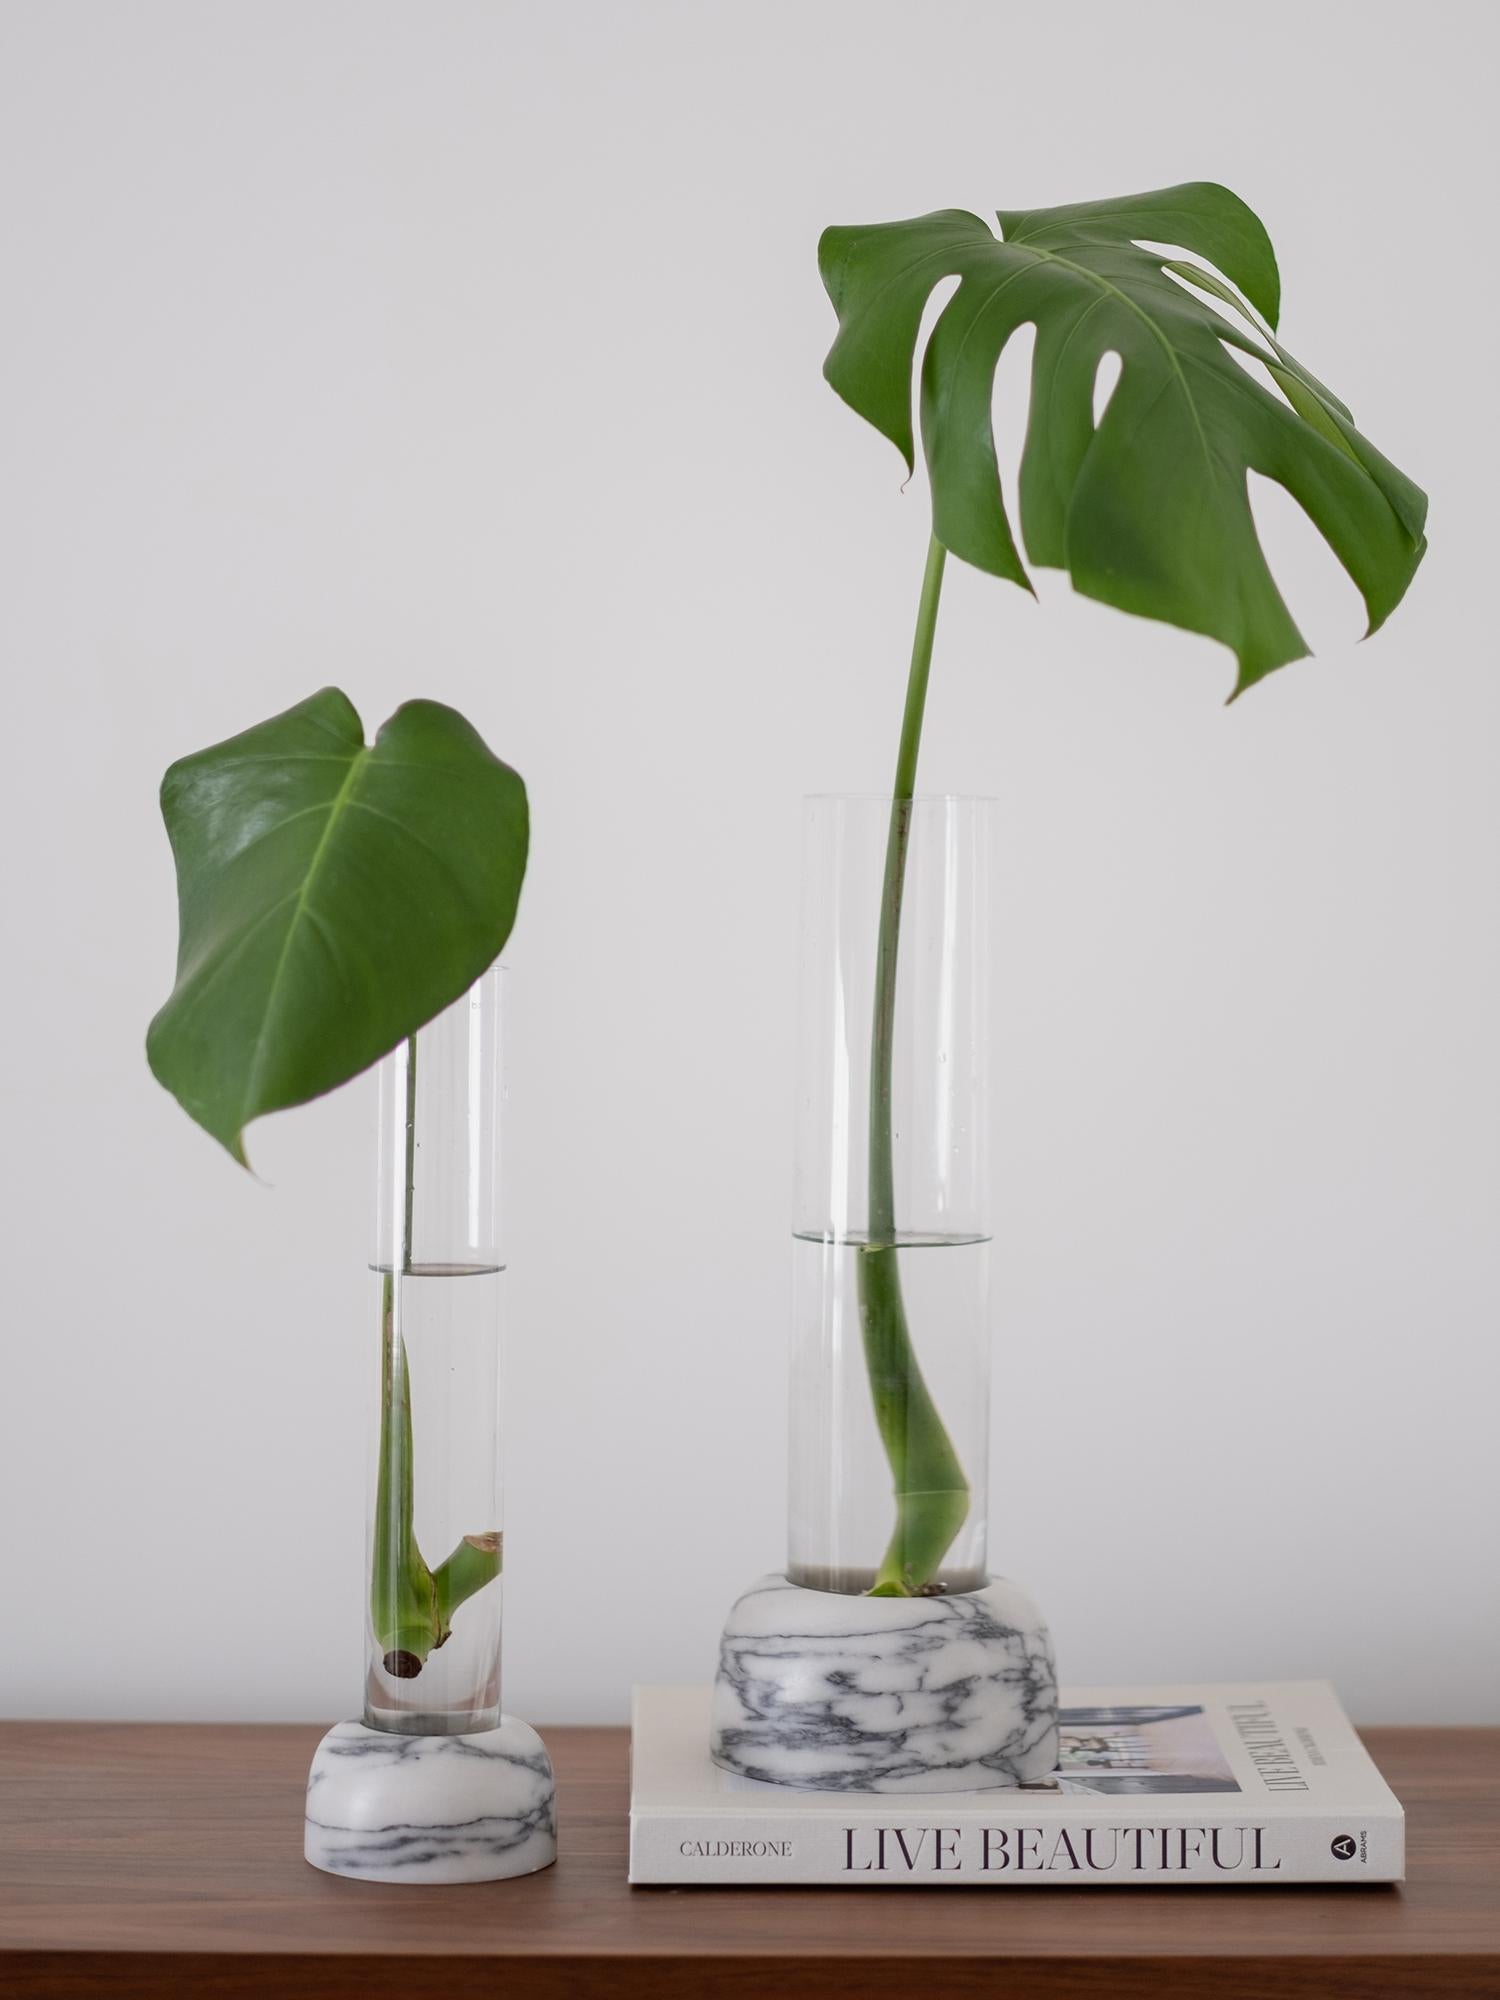 Mit ihrer ungewöhnlichen Silhouette hebt diese Vase die Vertikale hervor und täuscht das menschliche Auge. Die Zweimaterialität ist nicht nur ästhetisch ansprechend, sondern hat auch funktionale Gründe: In mundgeblasenen Glaszylindern können hohe